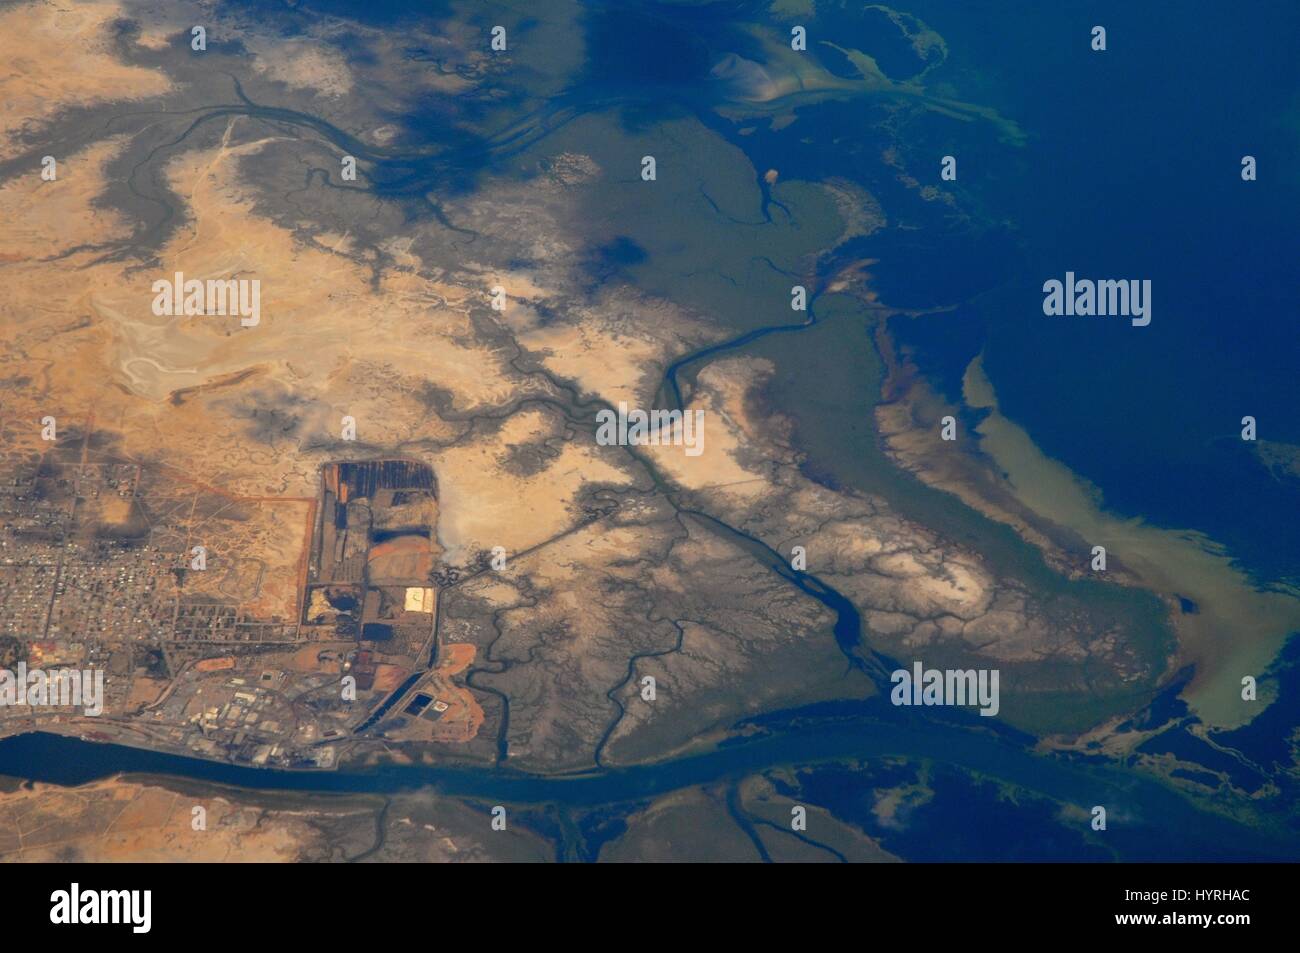 Australia, South Australia, Adelaide, Aerial view of coast Stock Photo